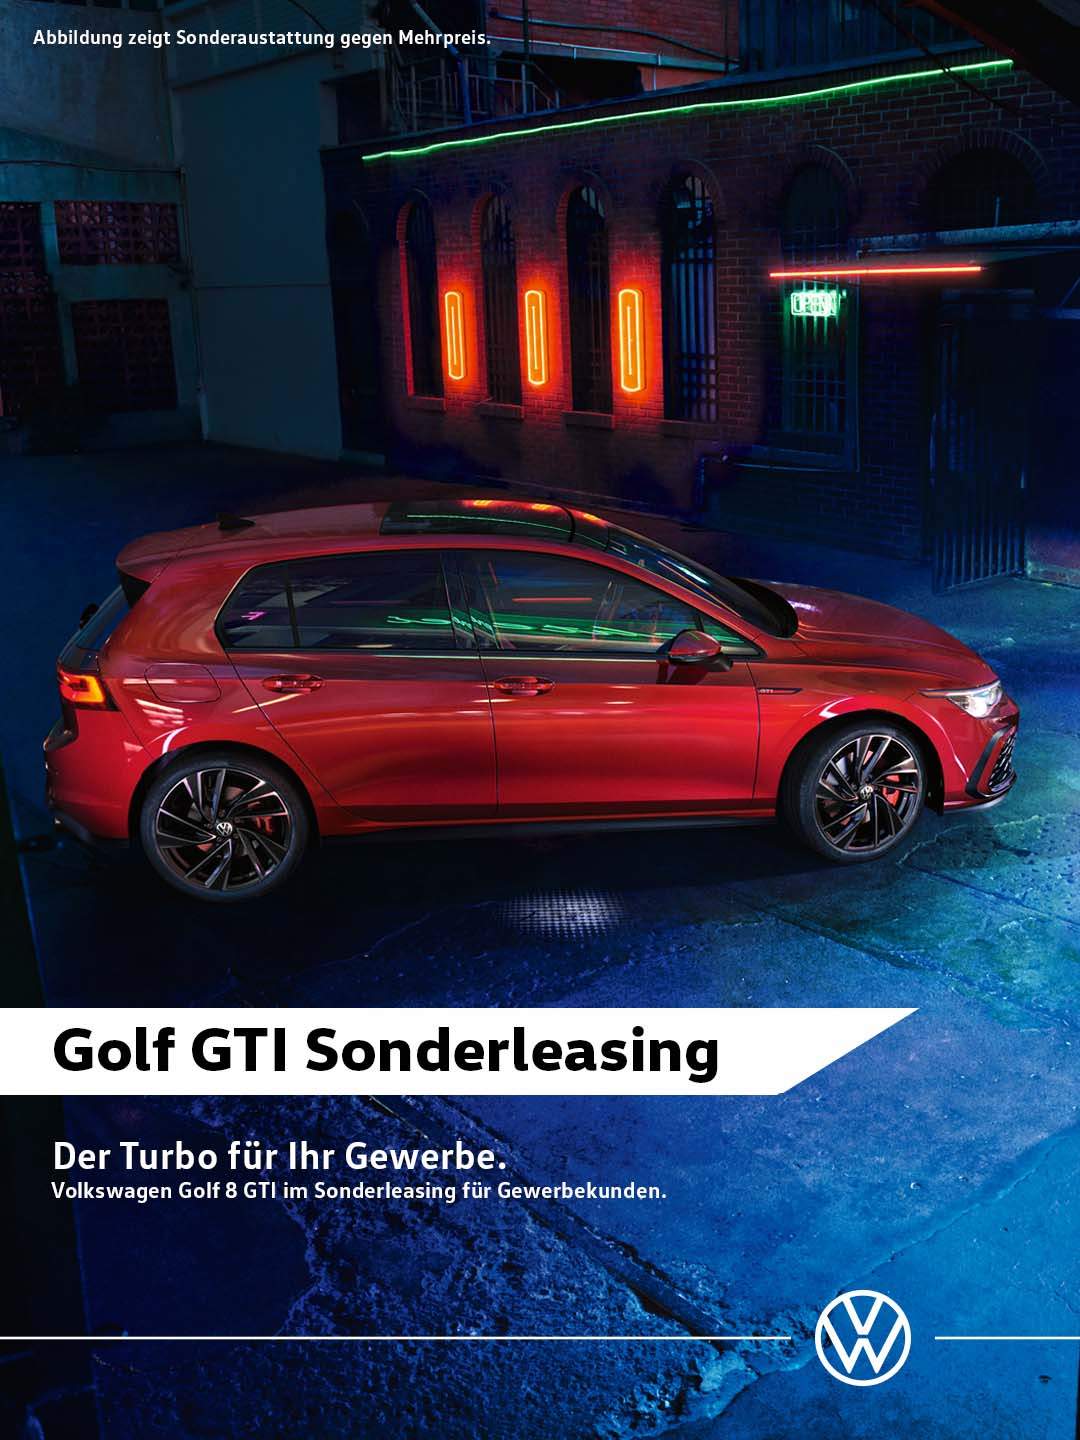 Golf 8 GTI Sonderleasing für Gewerbekunden